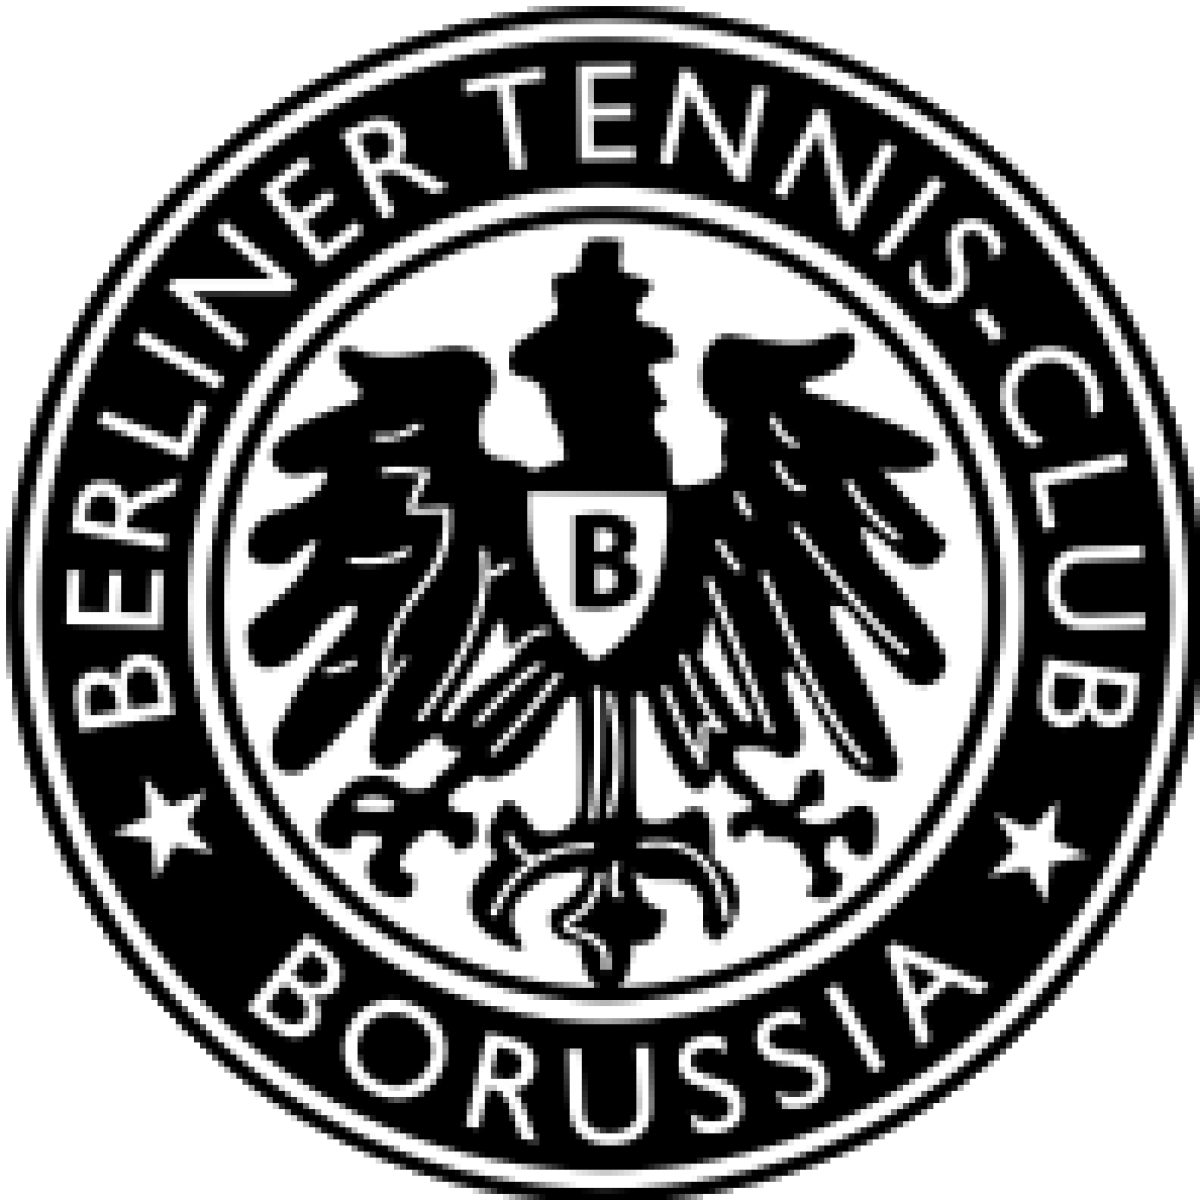 «Теннис-Боруссия» Берлин, Фото